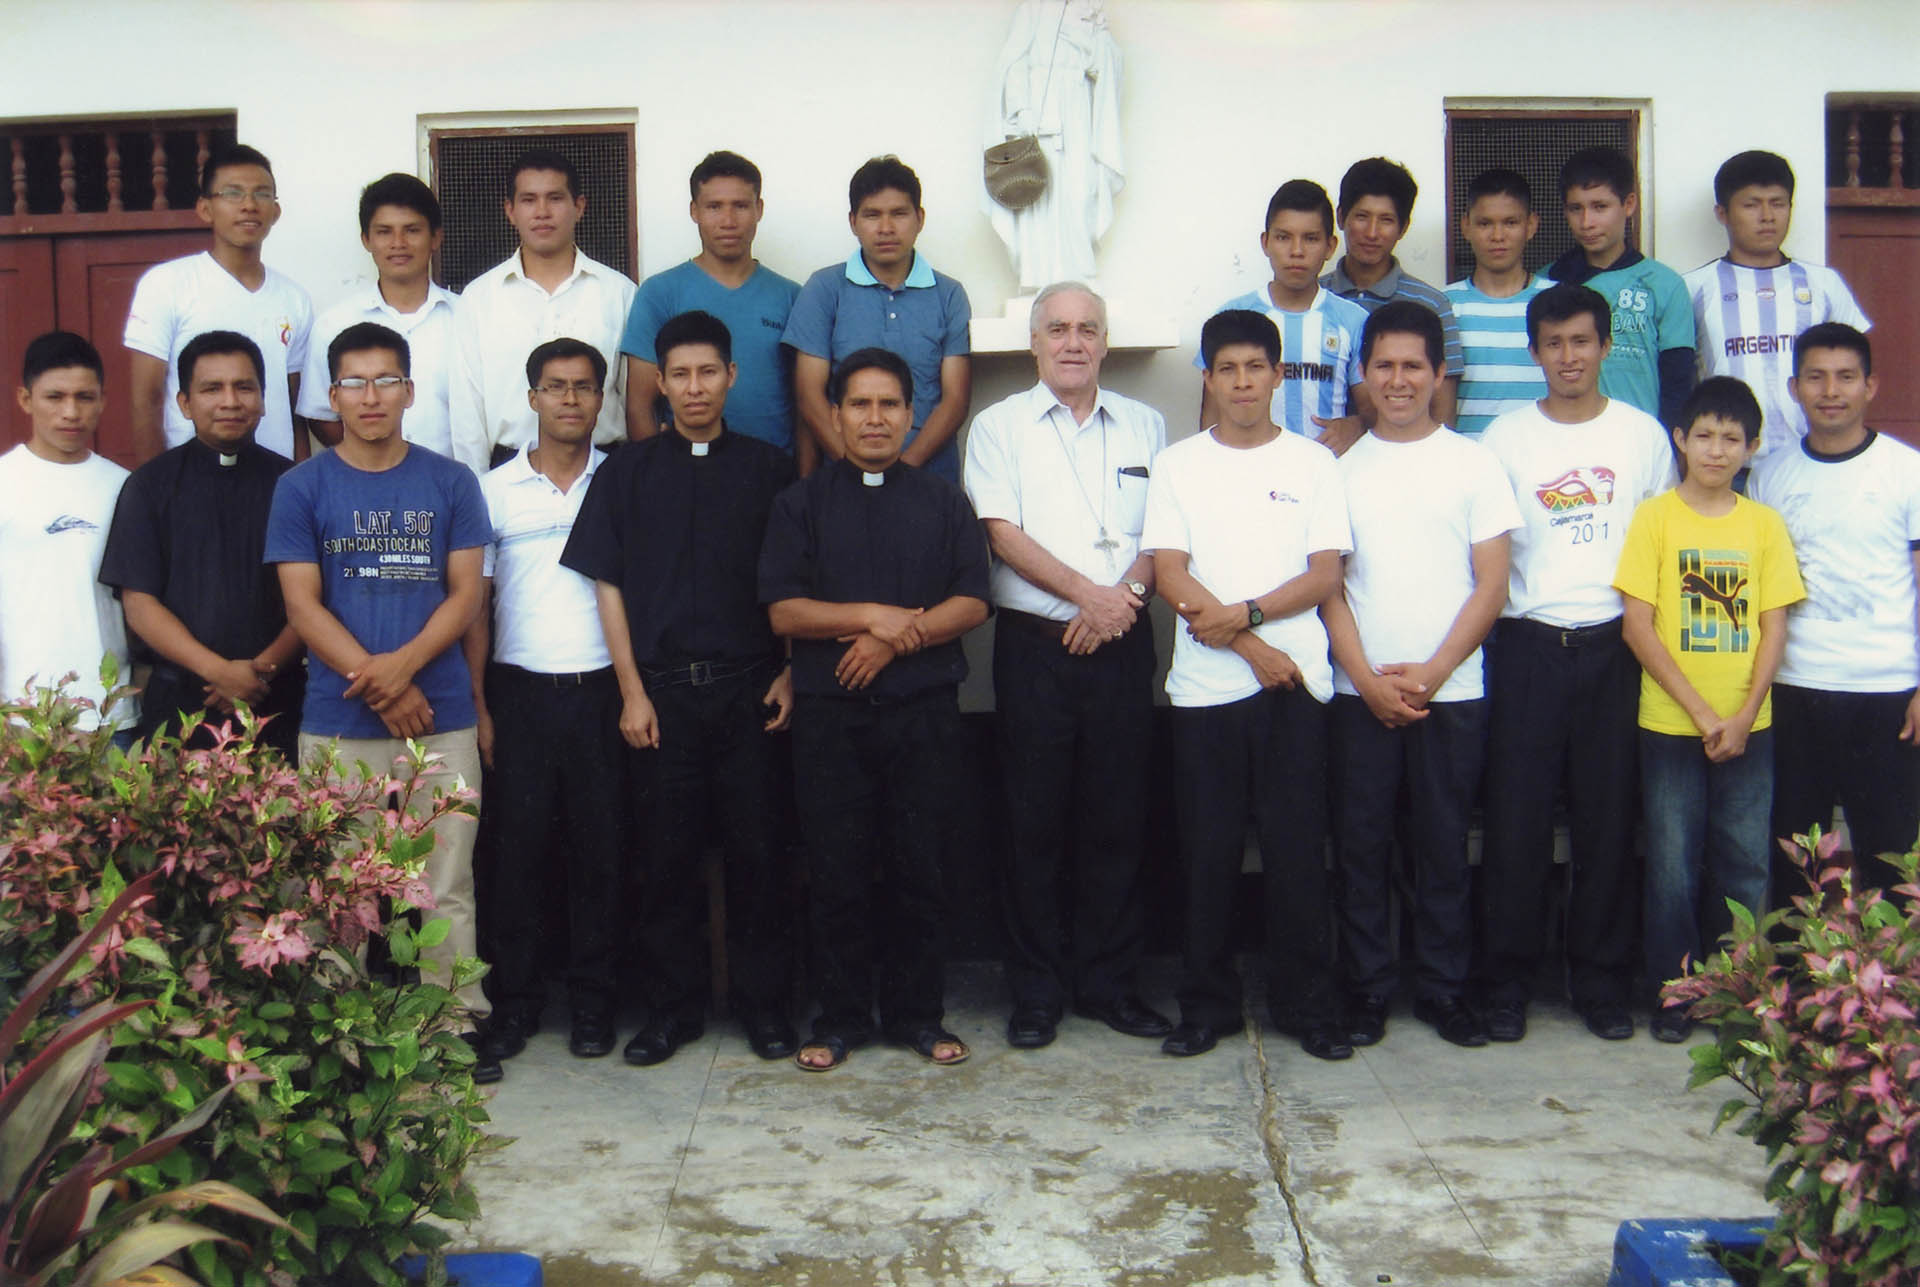 Ayuda a la formación de 17 futuros sacerdotes